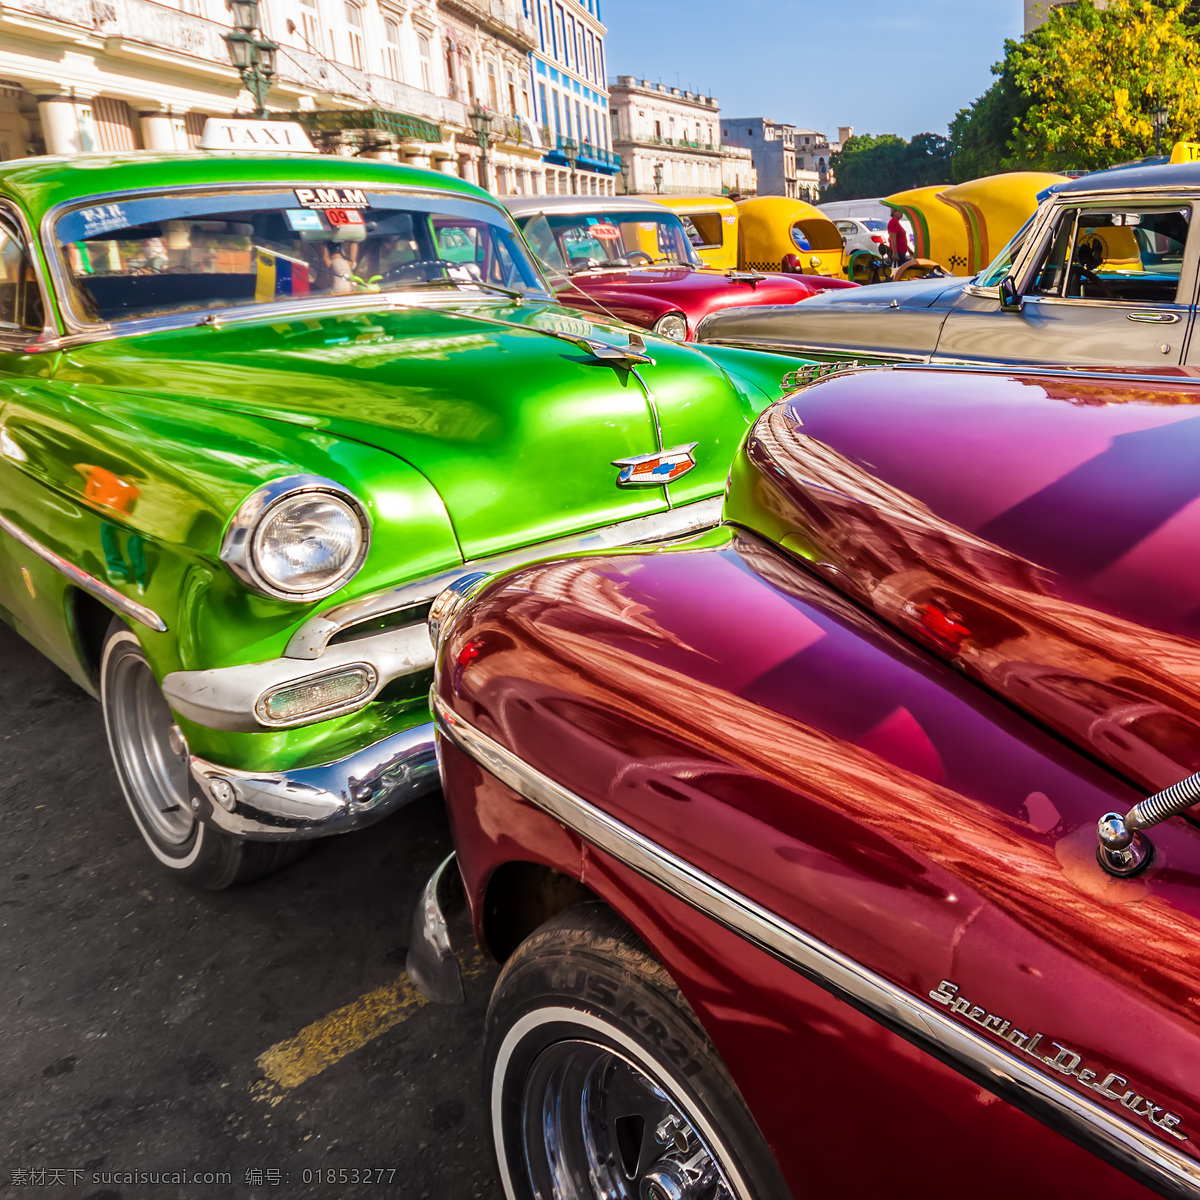 古巴 街头 轿车 老式轿车 古巴街头 古巴风情 汽车 车辆 城市风光 环境家居